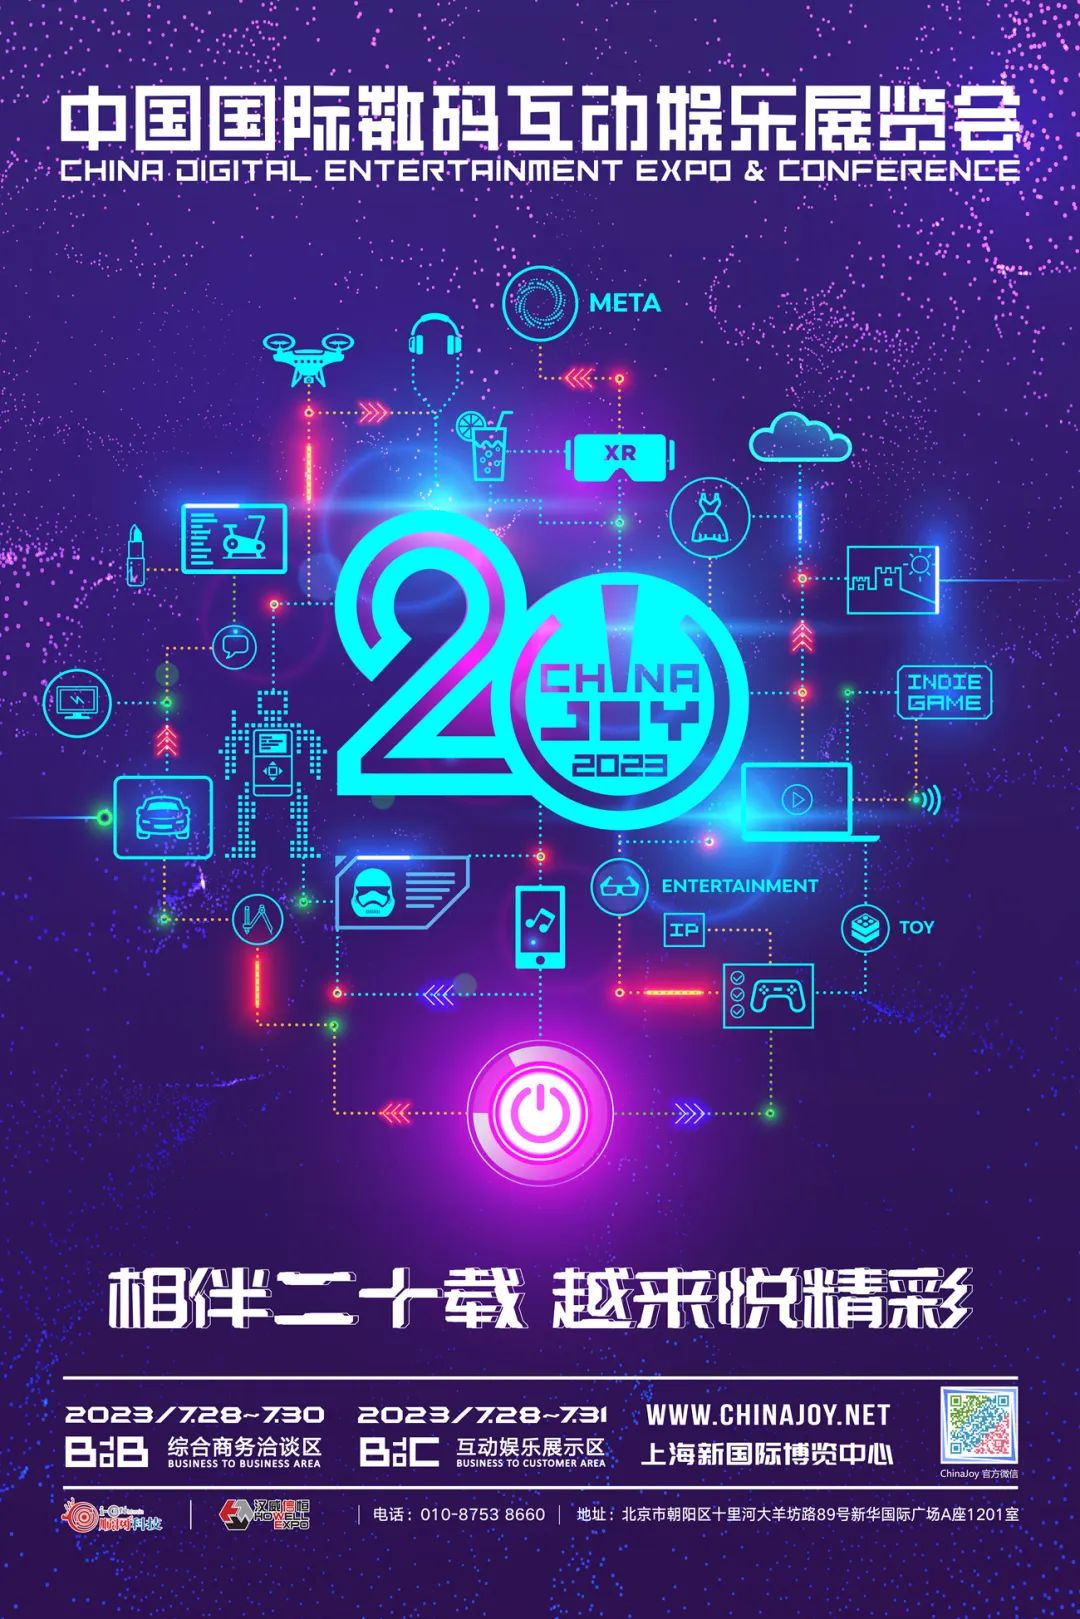 【官宣】3 家企业成为 2023 年第二十届 ChinaJoy 第二批指定经纪公司